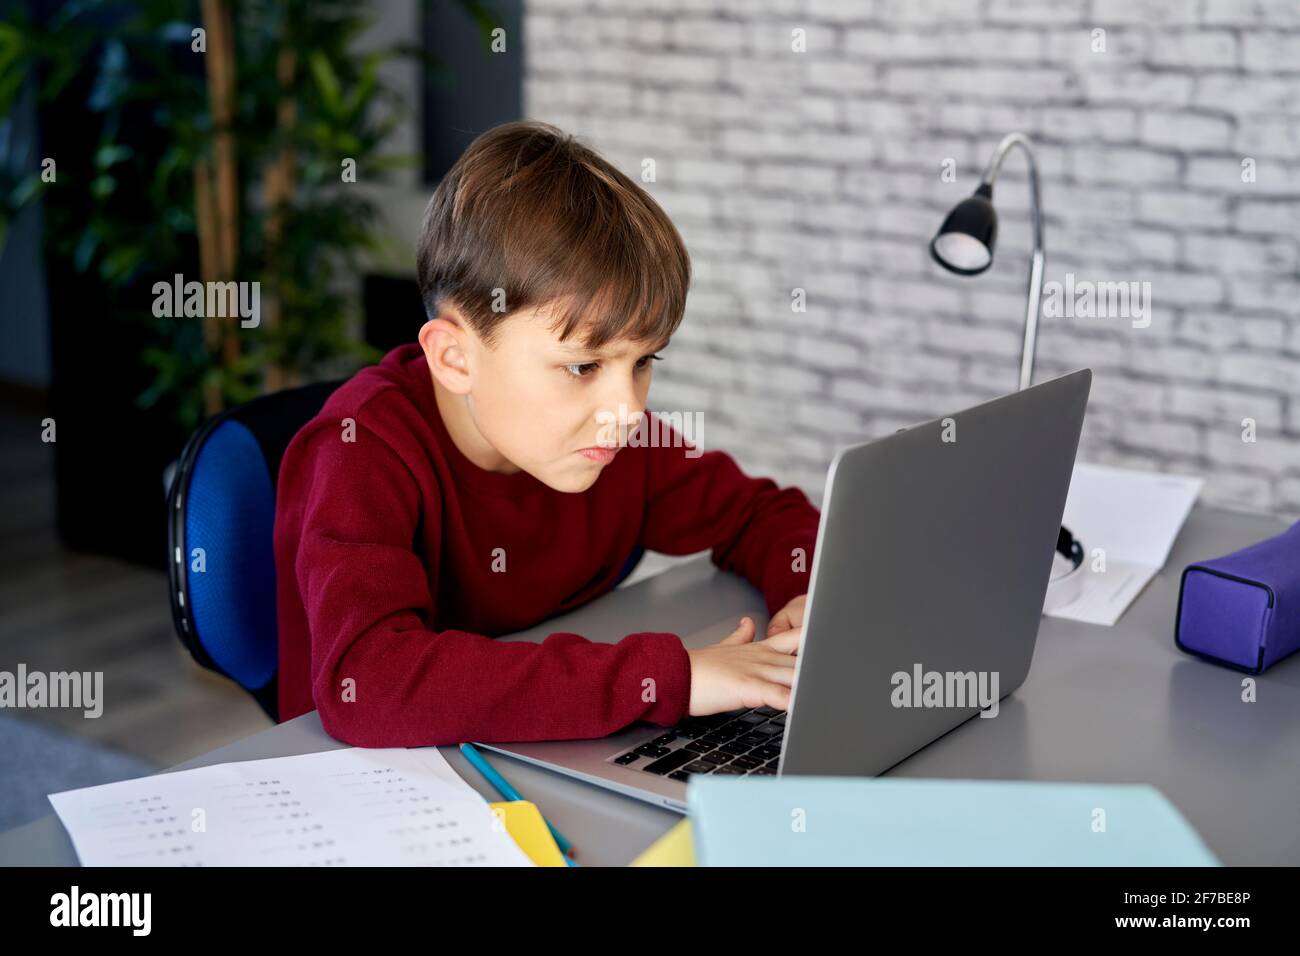 Garçon concentré utilisant un ordinateur portable pendant l'éducation Banque D'Images